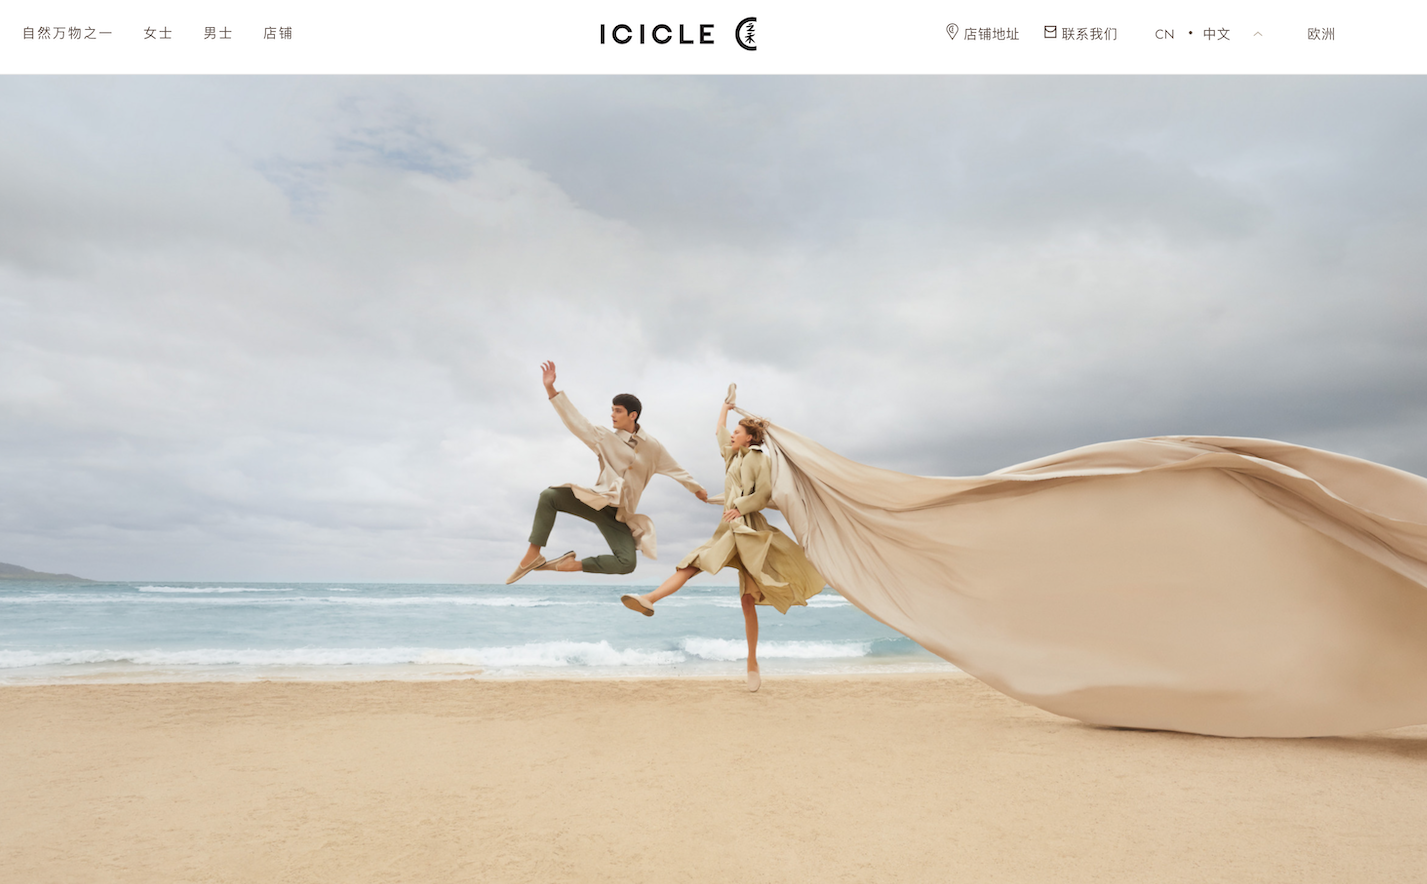 中国女装品牌 ICICLE 在东京开设第二家日本门店